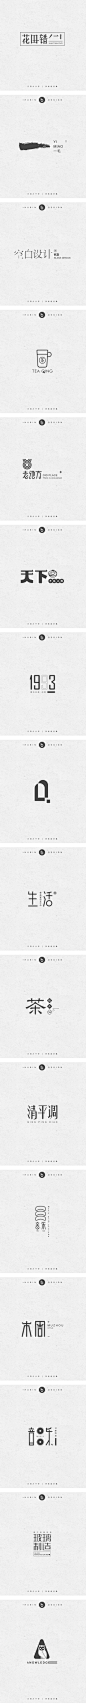 静夜思 | LOGO字体小记 -字体传奇网-中国首个字体品牌设计师交流网